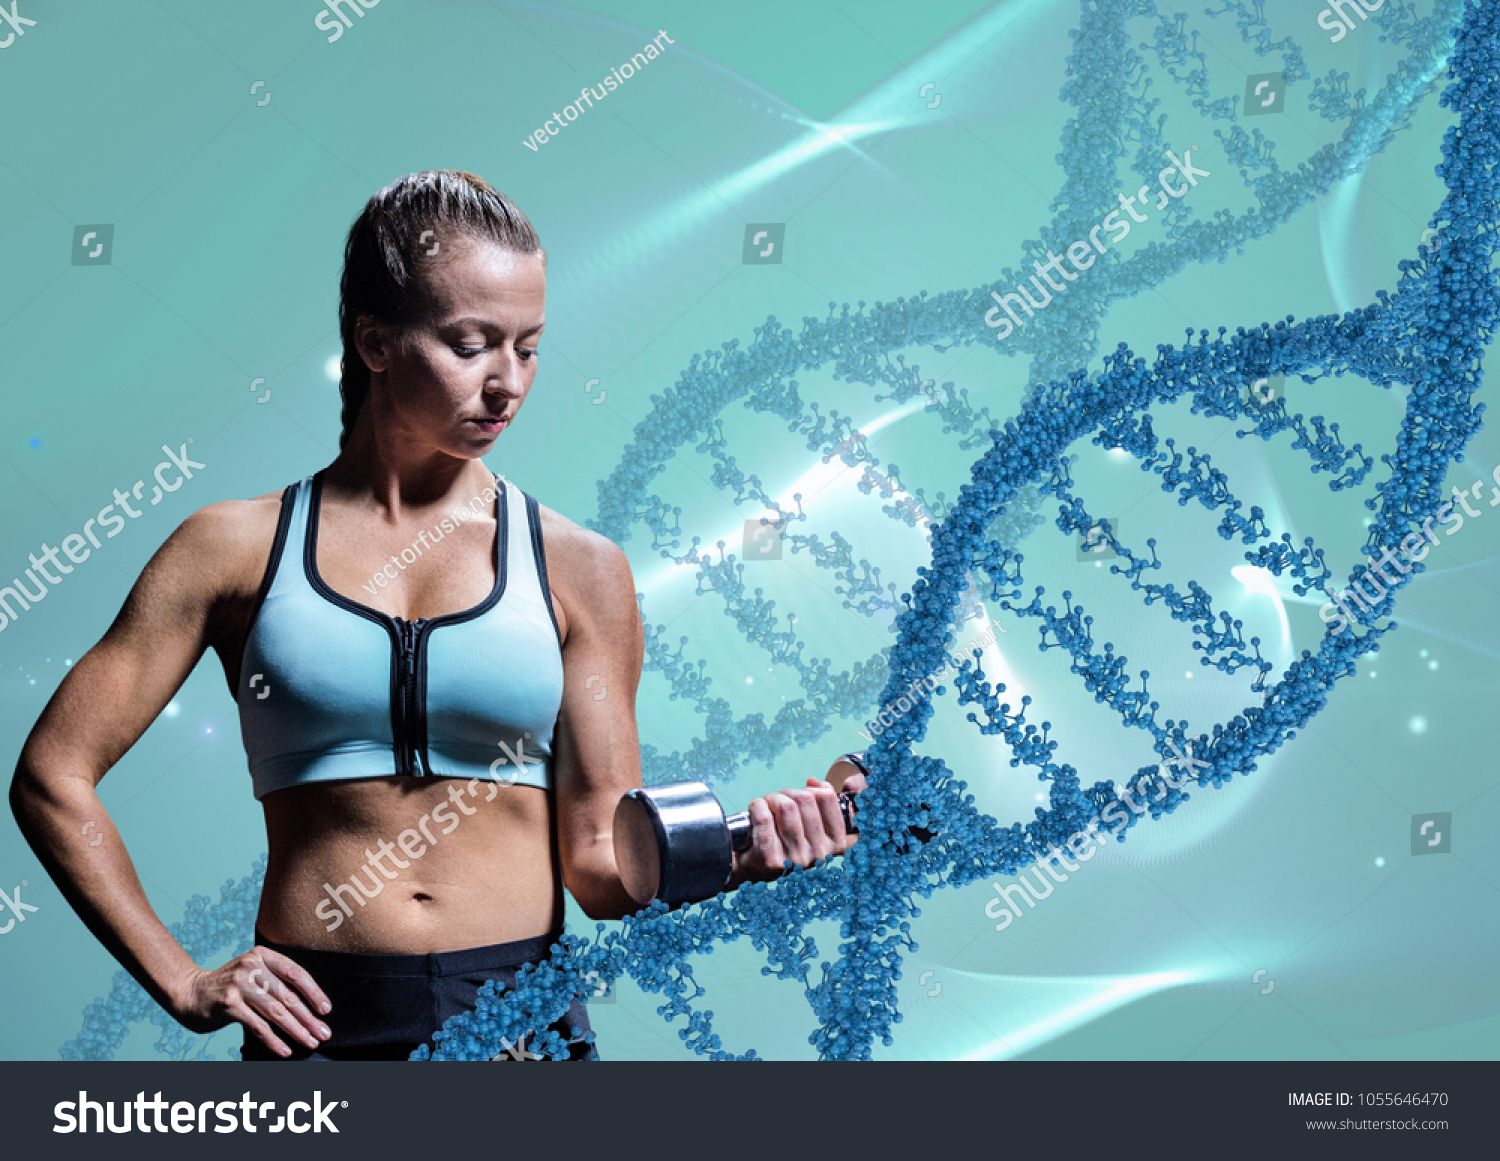 Одаренным спортсменам. Спортивная генетика. Генетика в спорте. Генетическая предрасположенность к спорту. Спортивная тематика.